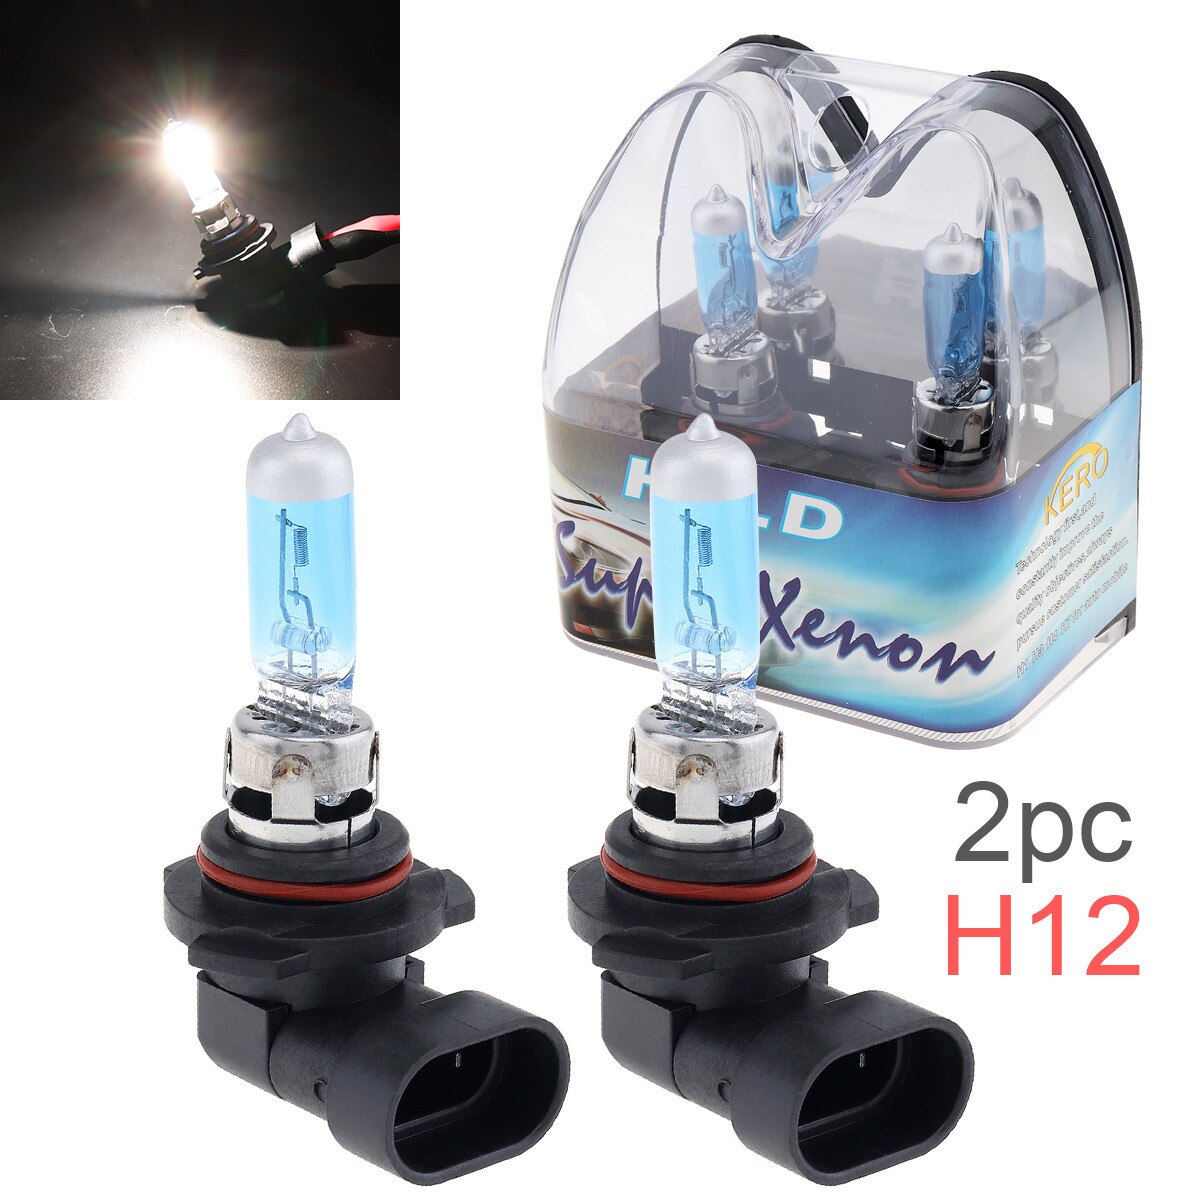 2 Stuks 12V H12 53W 6000K Wit Licht Super Bright Auto Xenon Halogeen Lamp Auto Koplamp fog Light Bulb